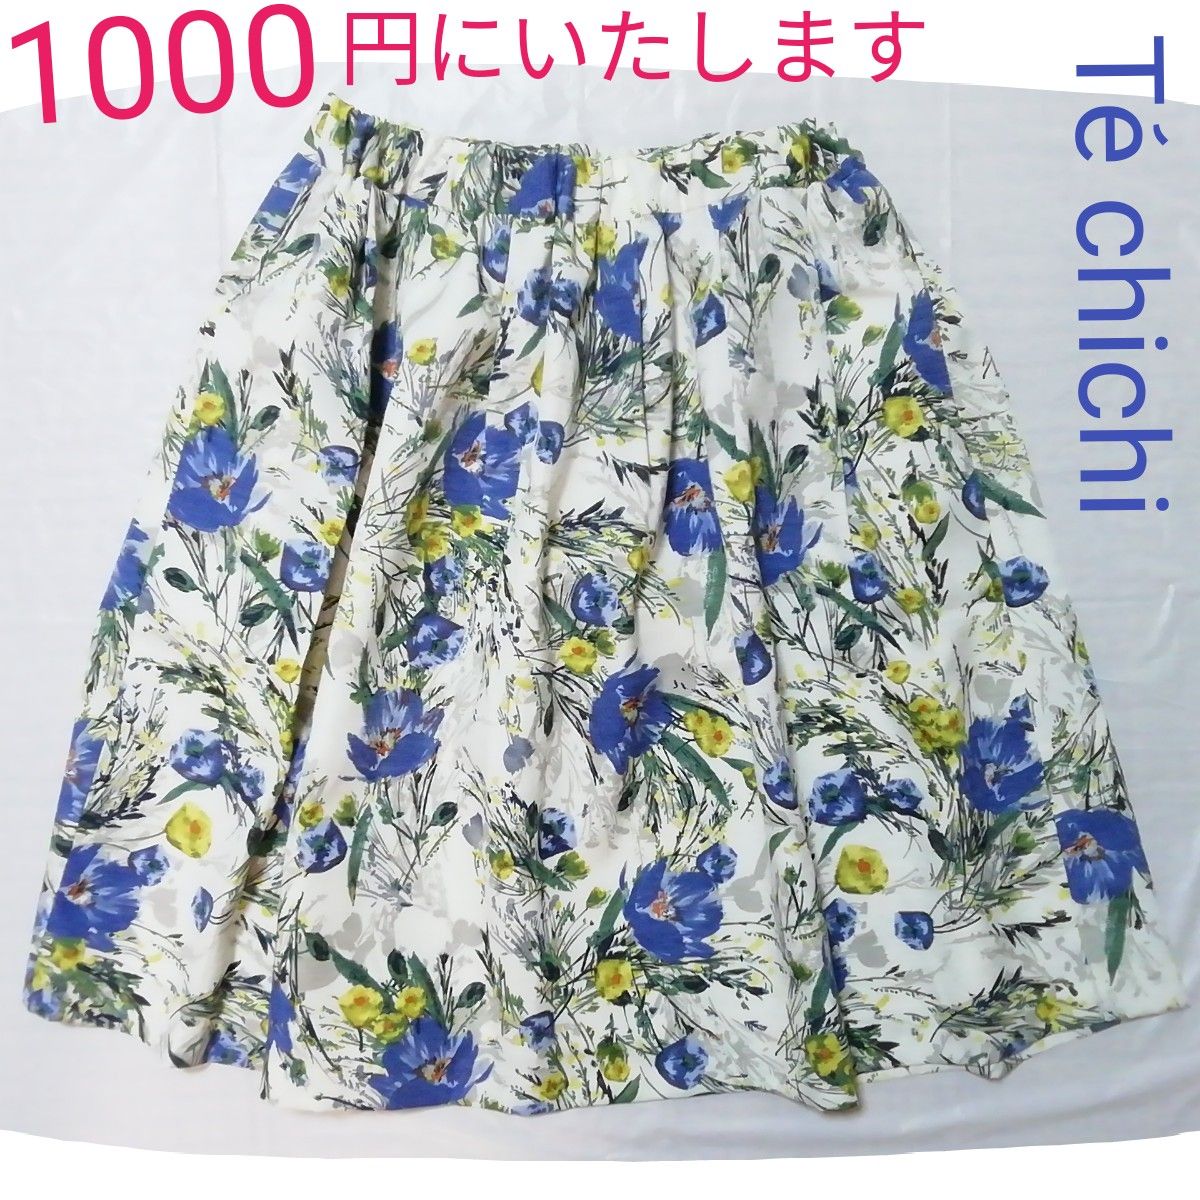 【1000円にします】未使用品Te chichiフラワースカート　白地に花柄青黄色緑灰色テチチ